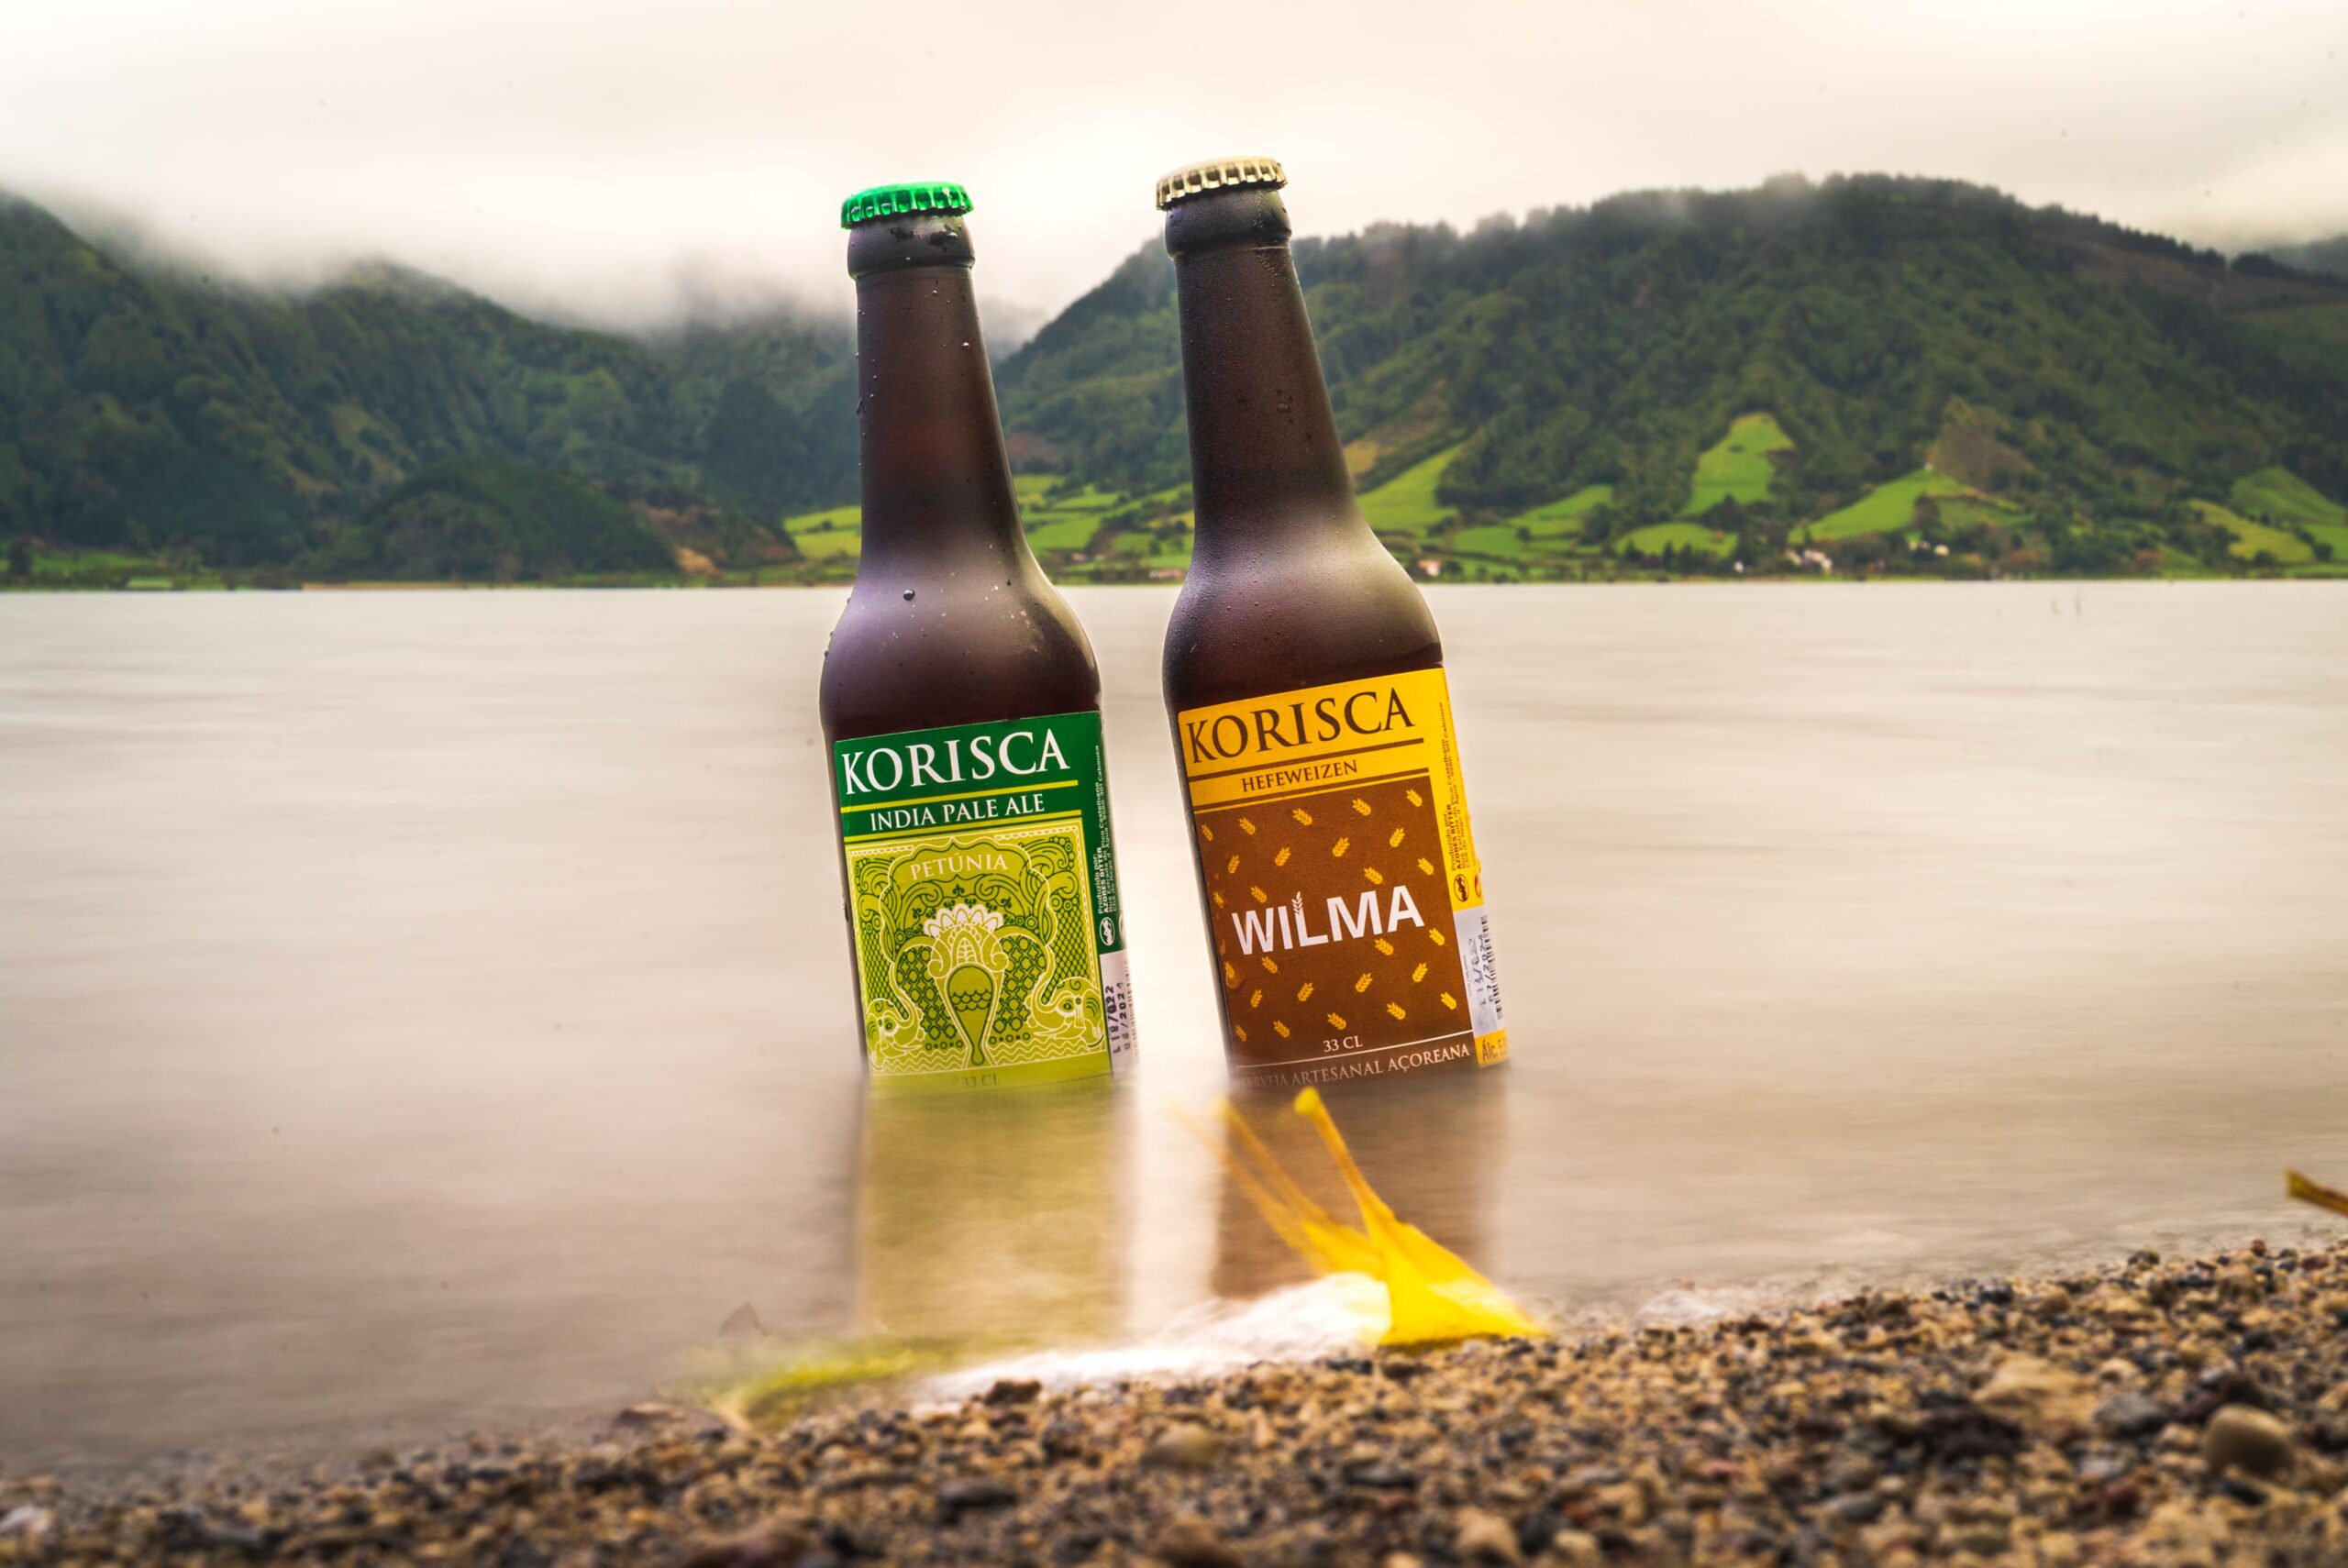 Cerveja artesanal Korisca, Petúnia (IPA) e Wilma (Hefeweizen), dentro da Lagoa das Sete Cidades, com o vale verde de fundo, Sete Cidades, Ponta Delgada, São Miguel, Açores.